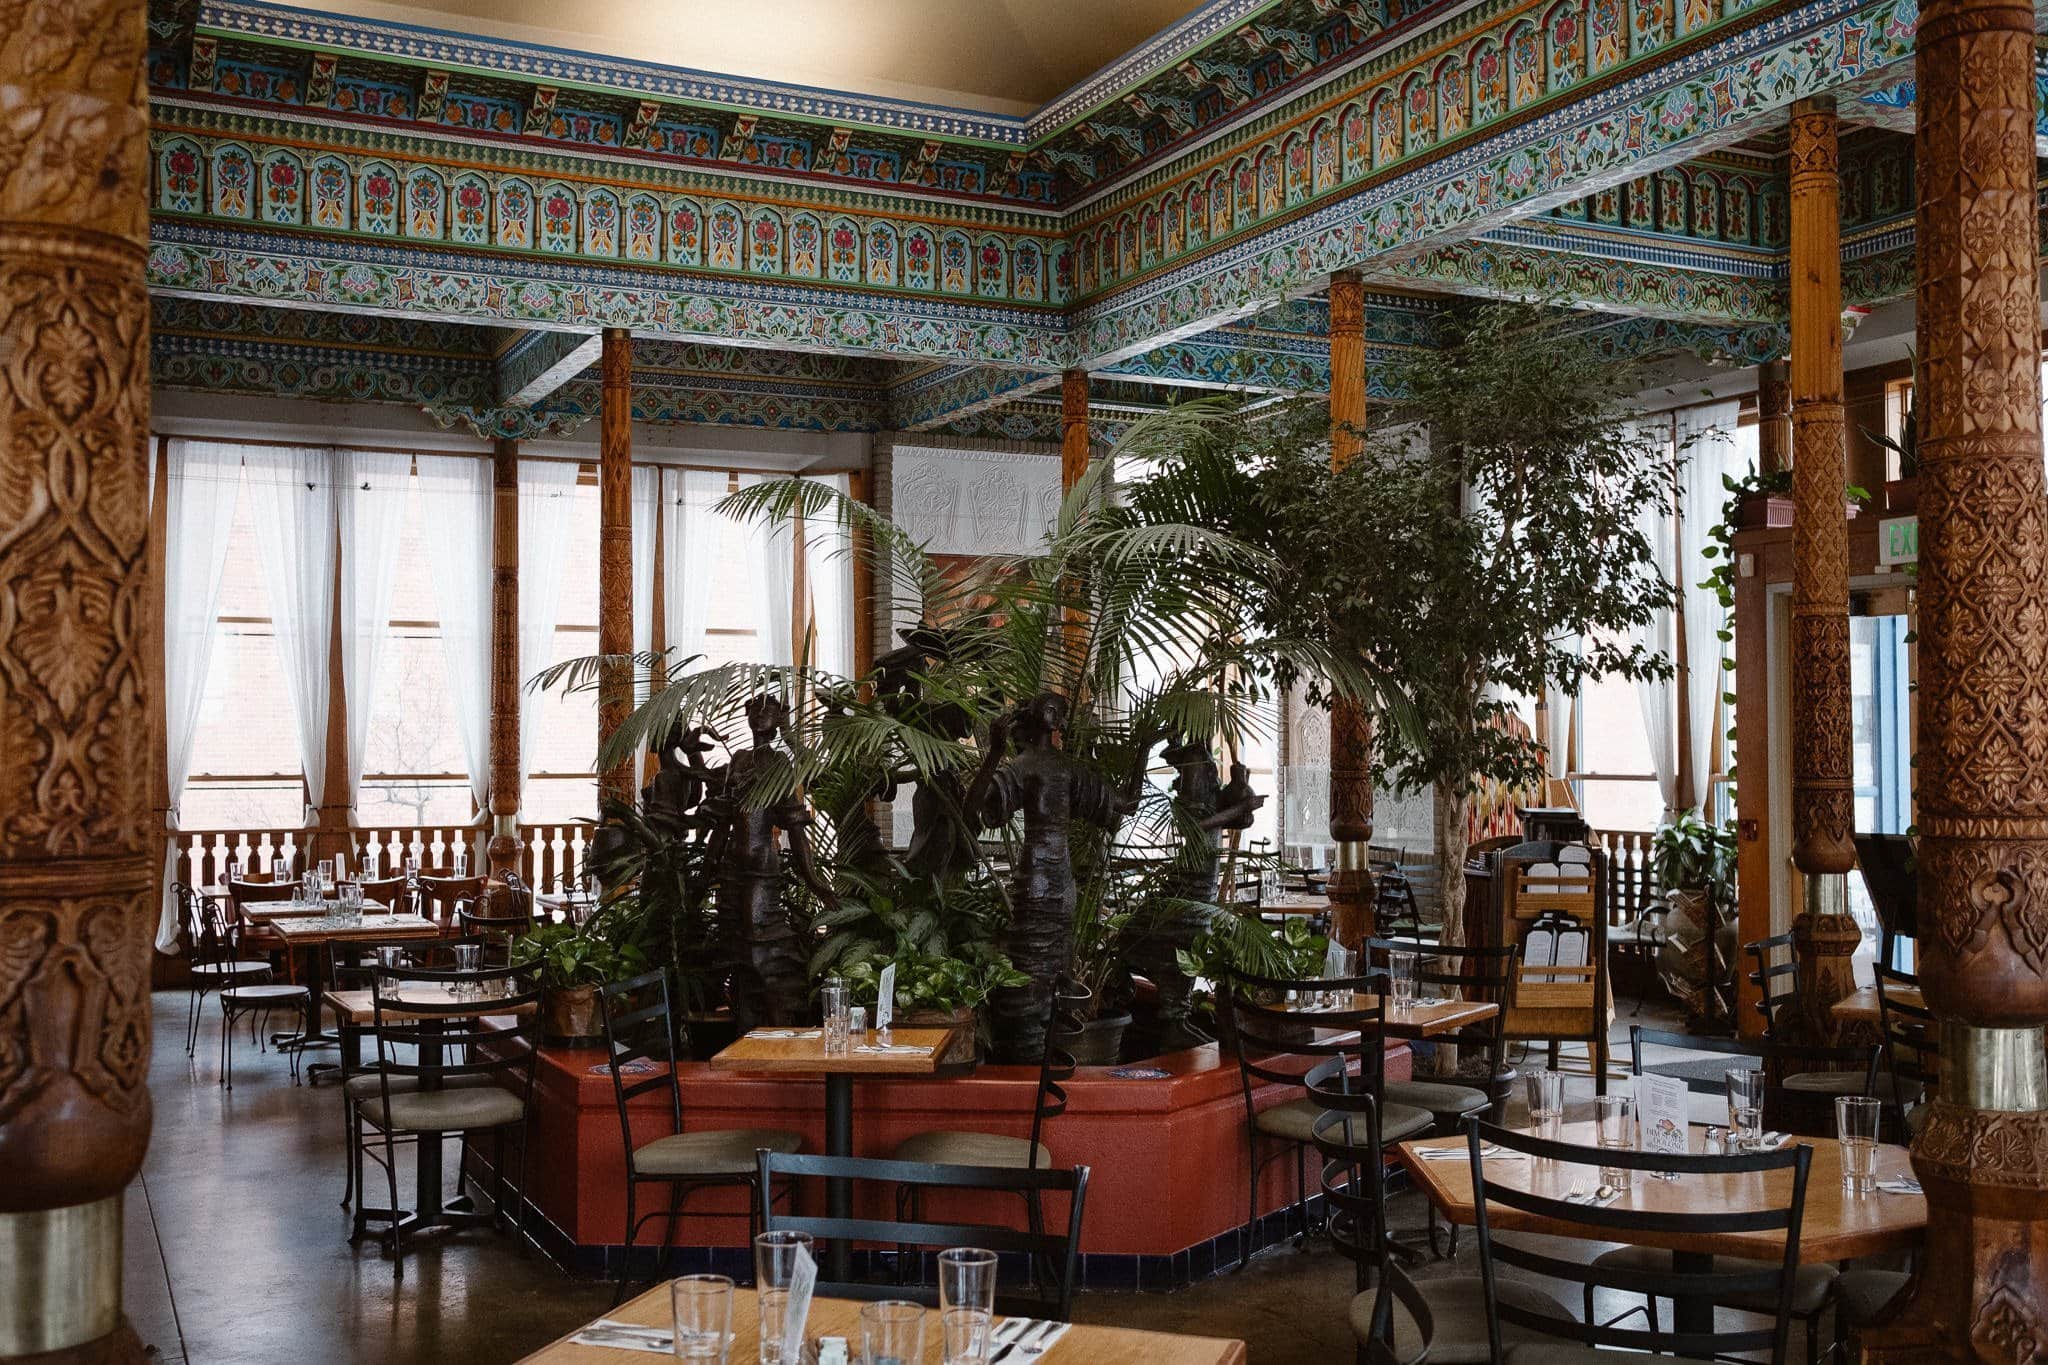 Dushanbe Teahouse Boulder wedding venue